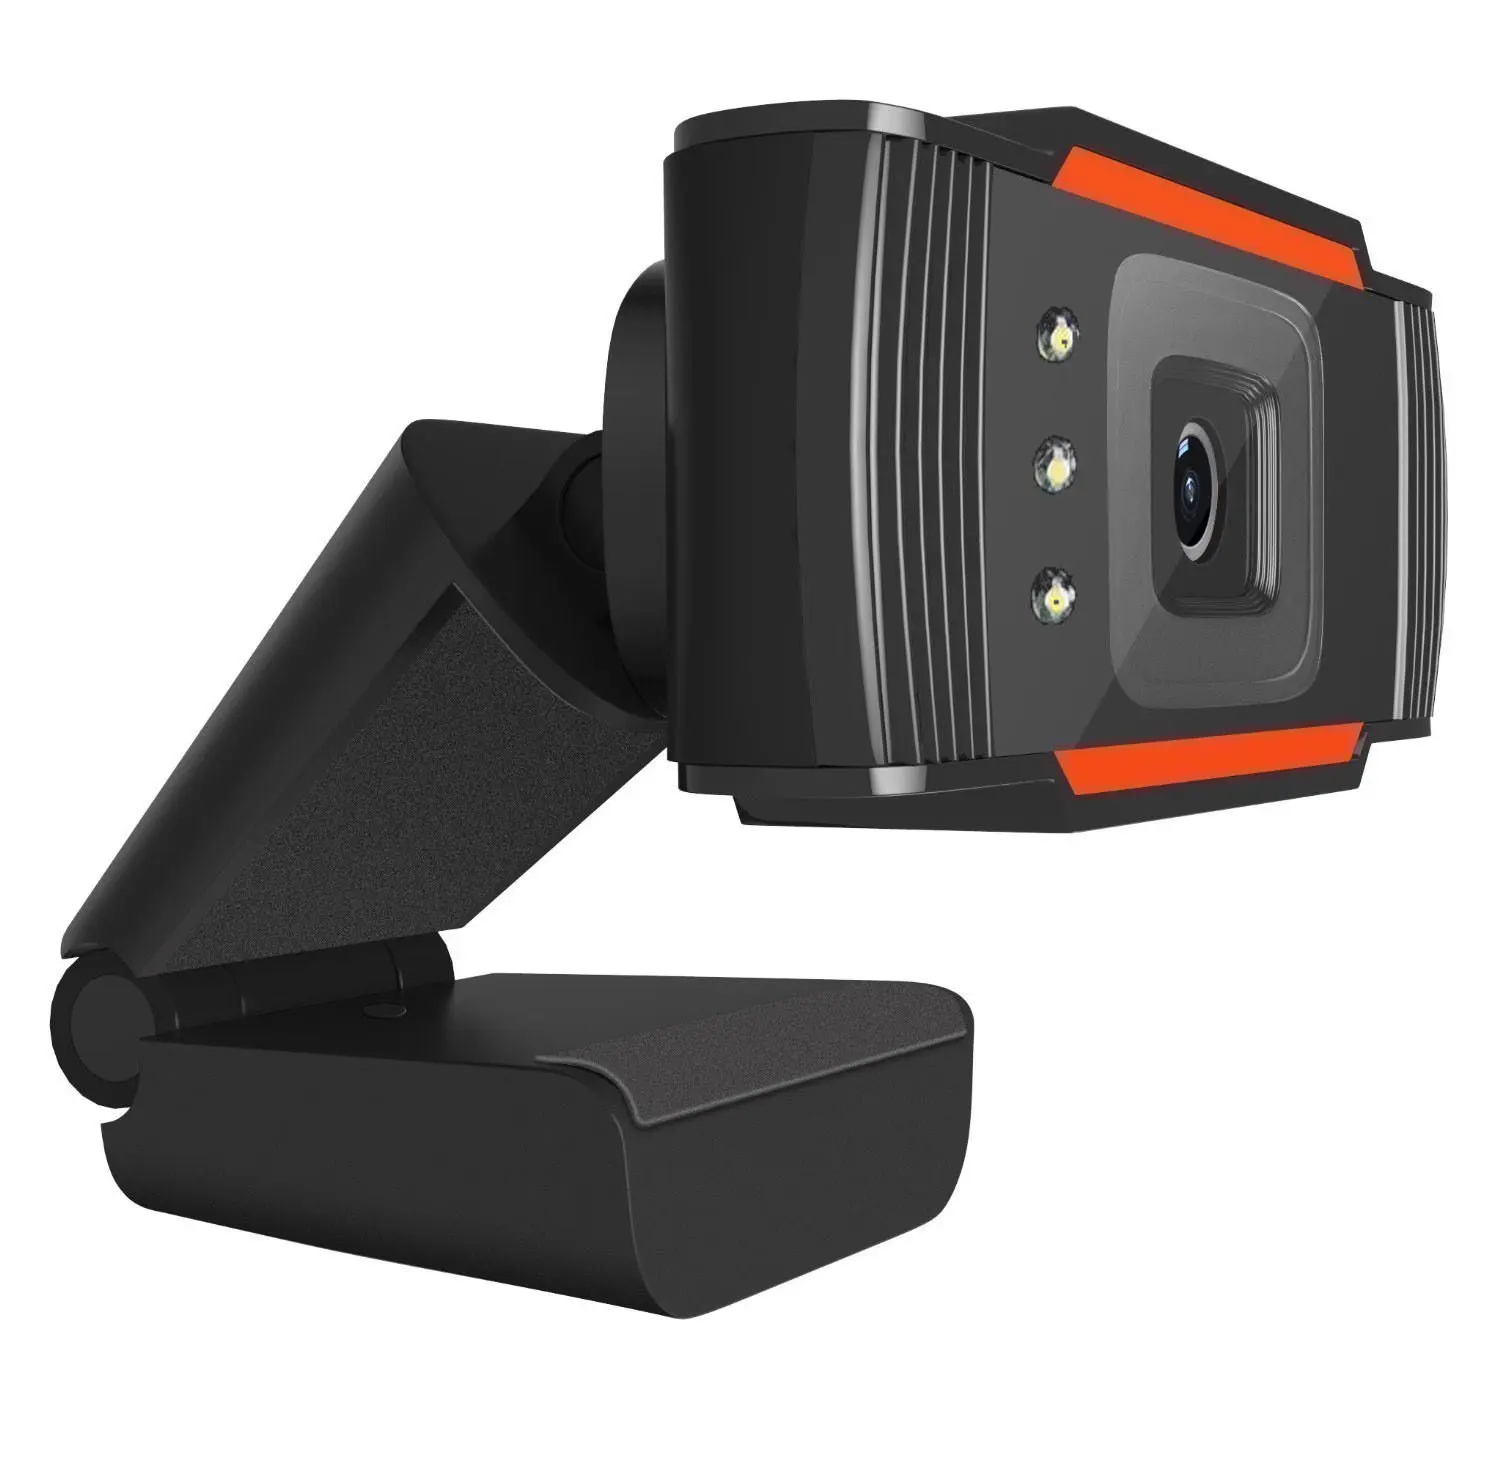 Веб-камера 480p 720p 1080p full hd 1920 потоковое видео конференц-камеры для ПК ноутбук видеокамеры Веб-камера